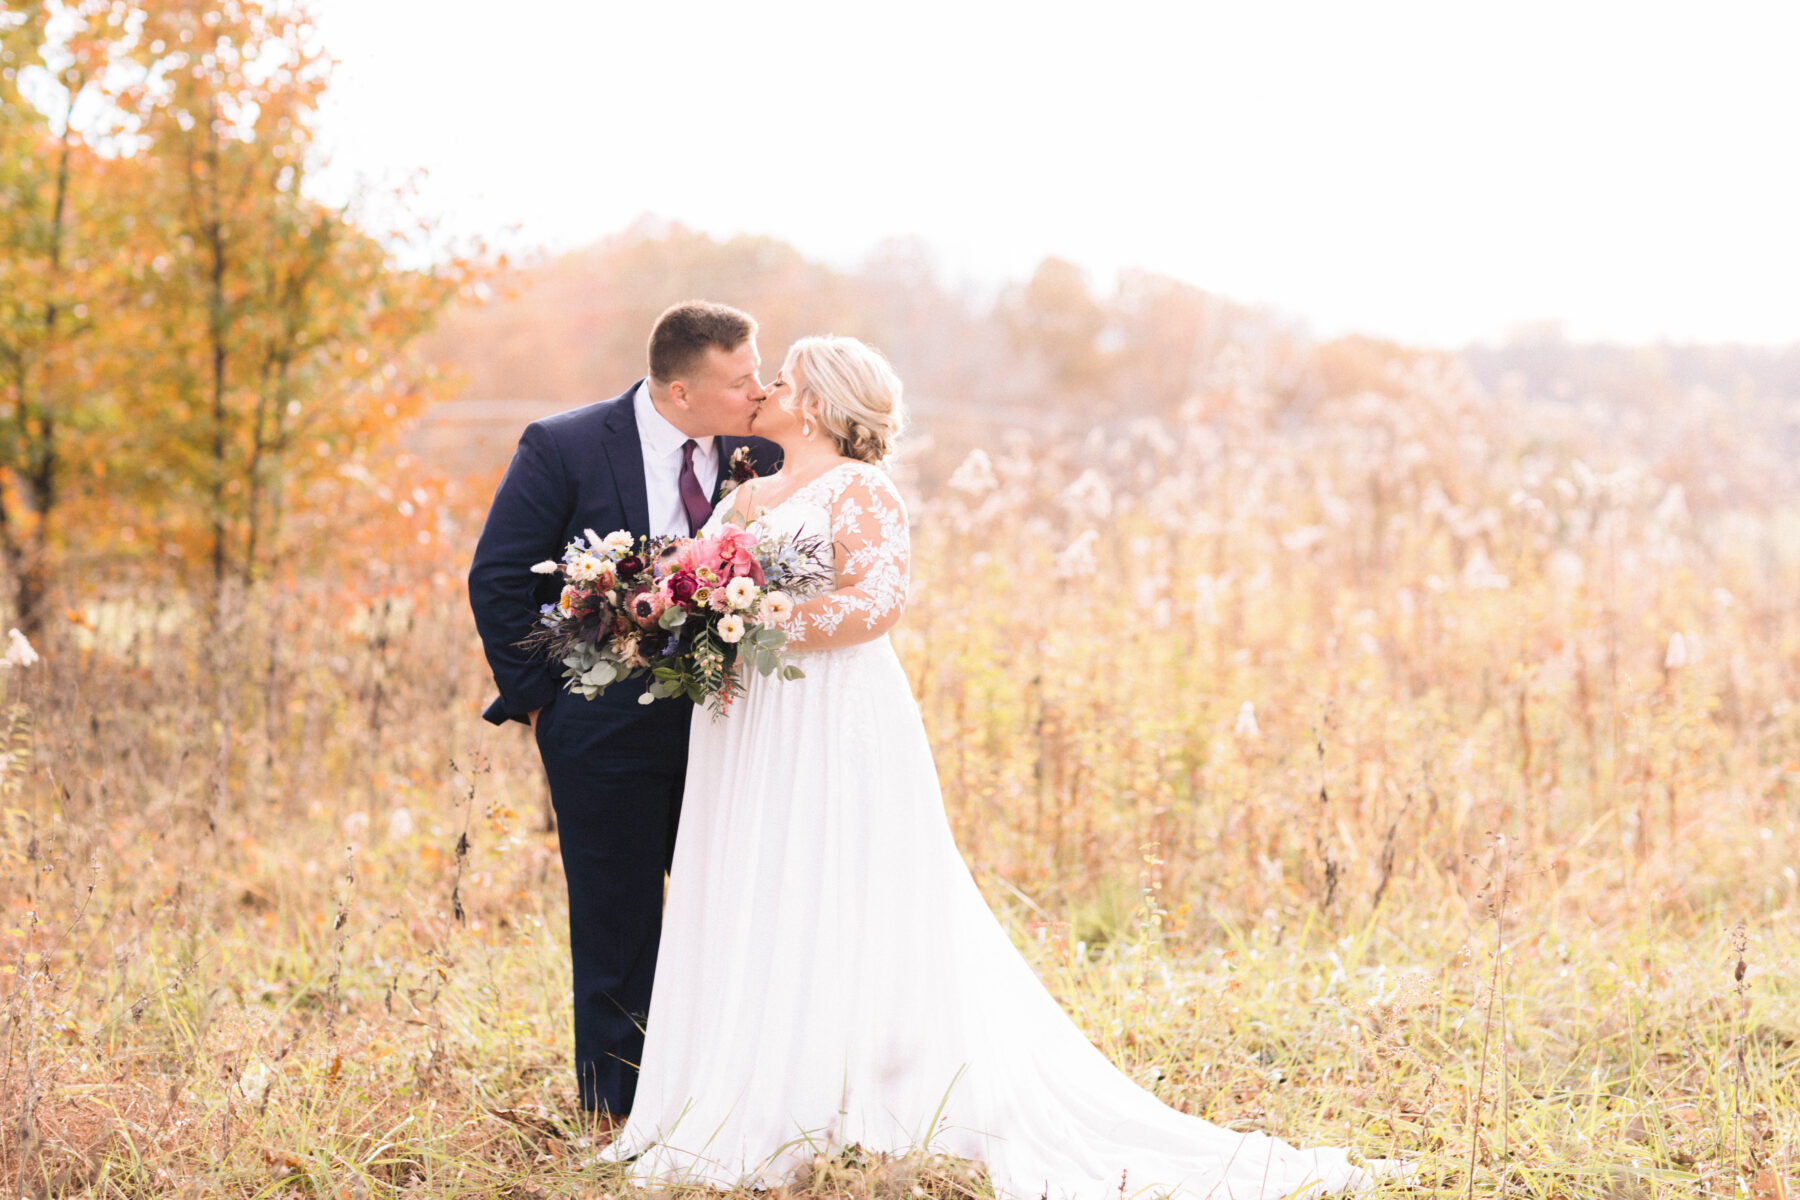 Meet Kayla Ketner Event Planning and Coordination | Nashville Bride Guide